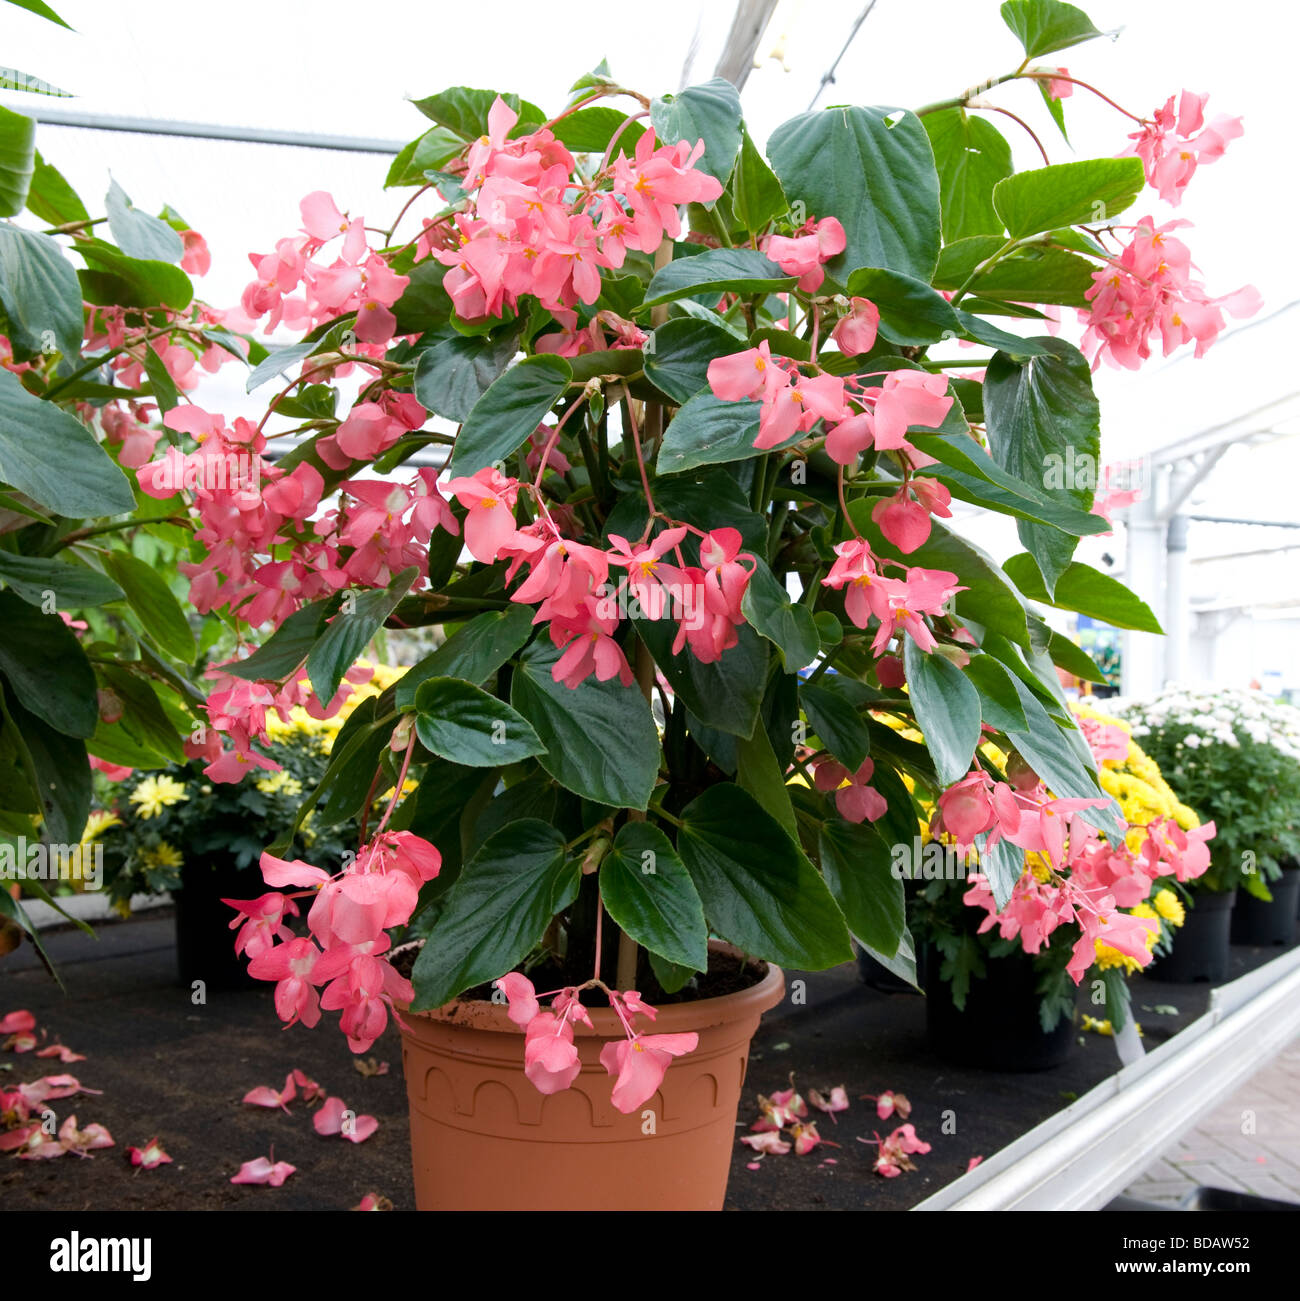 Begonia 'Dragon Wing'. Pot planta cultivada con pequeñas flores rosadas en  abundancia Fotografía de stock - Alamy